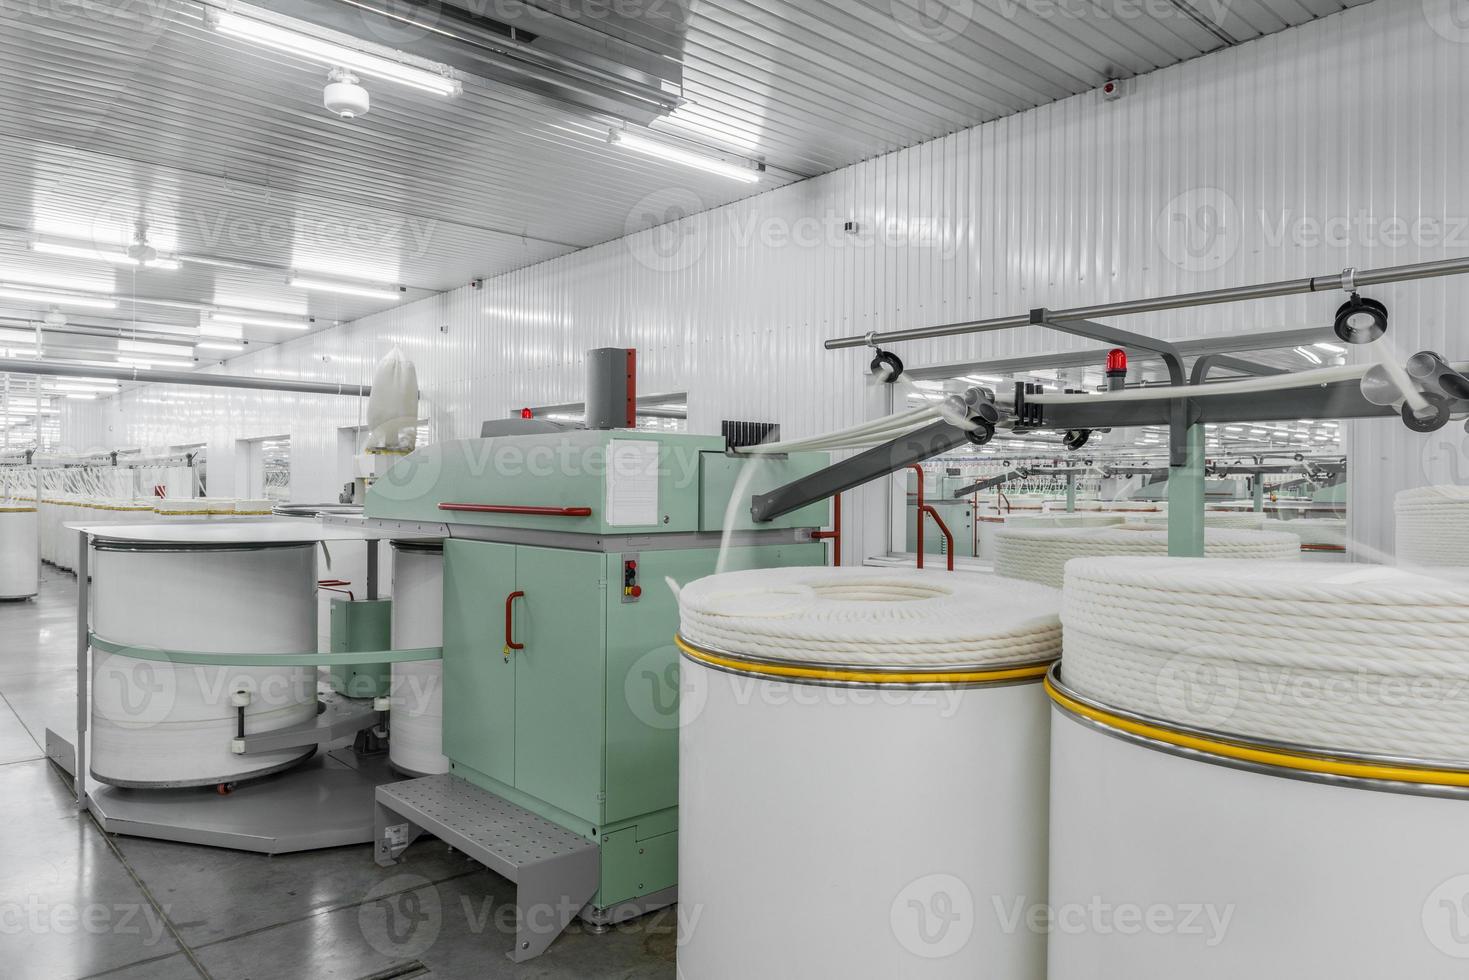 machines en apparatuur in de werkplaats voor de productie van draad. interieur van industriële textielfabriek foto